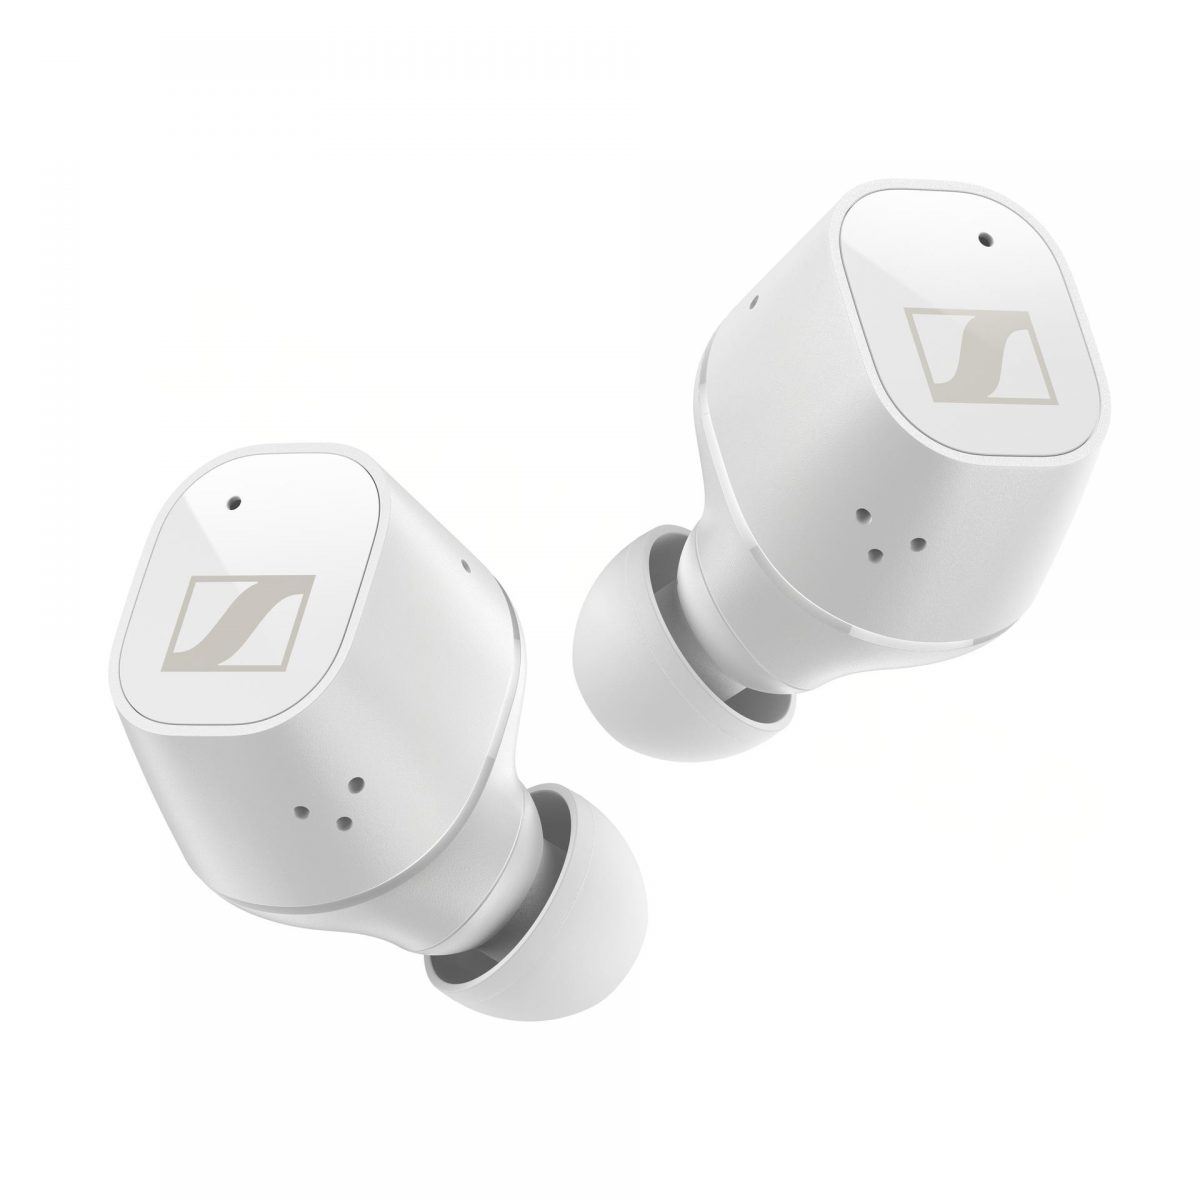 耳機選用被動降噪物料，與耳機的主動降噪技術相輔相成，亦都採用 IPX4 等級防潑濺設計。